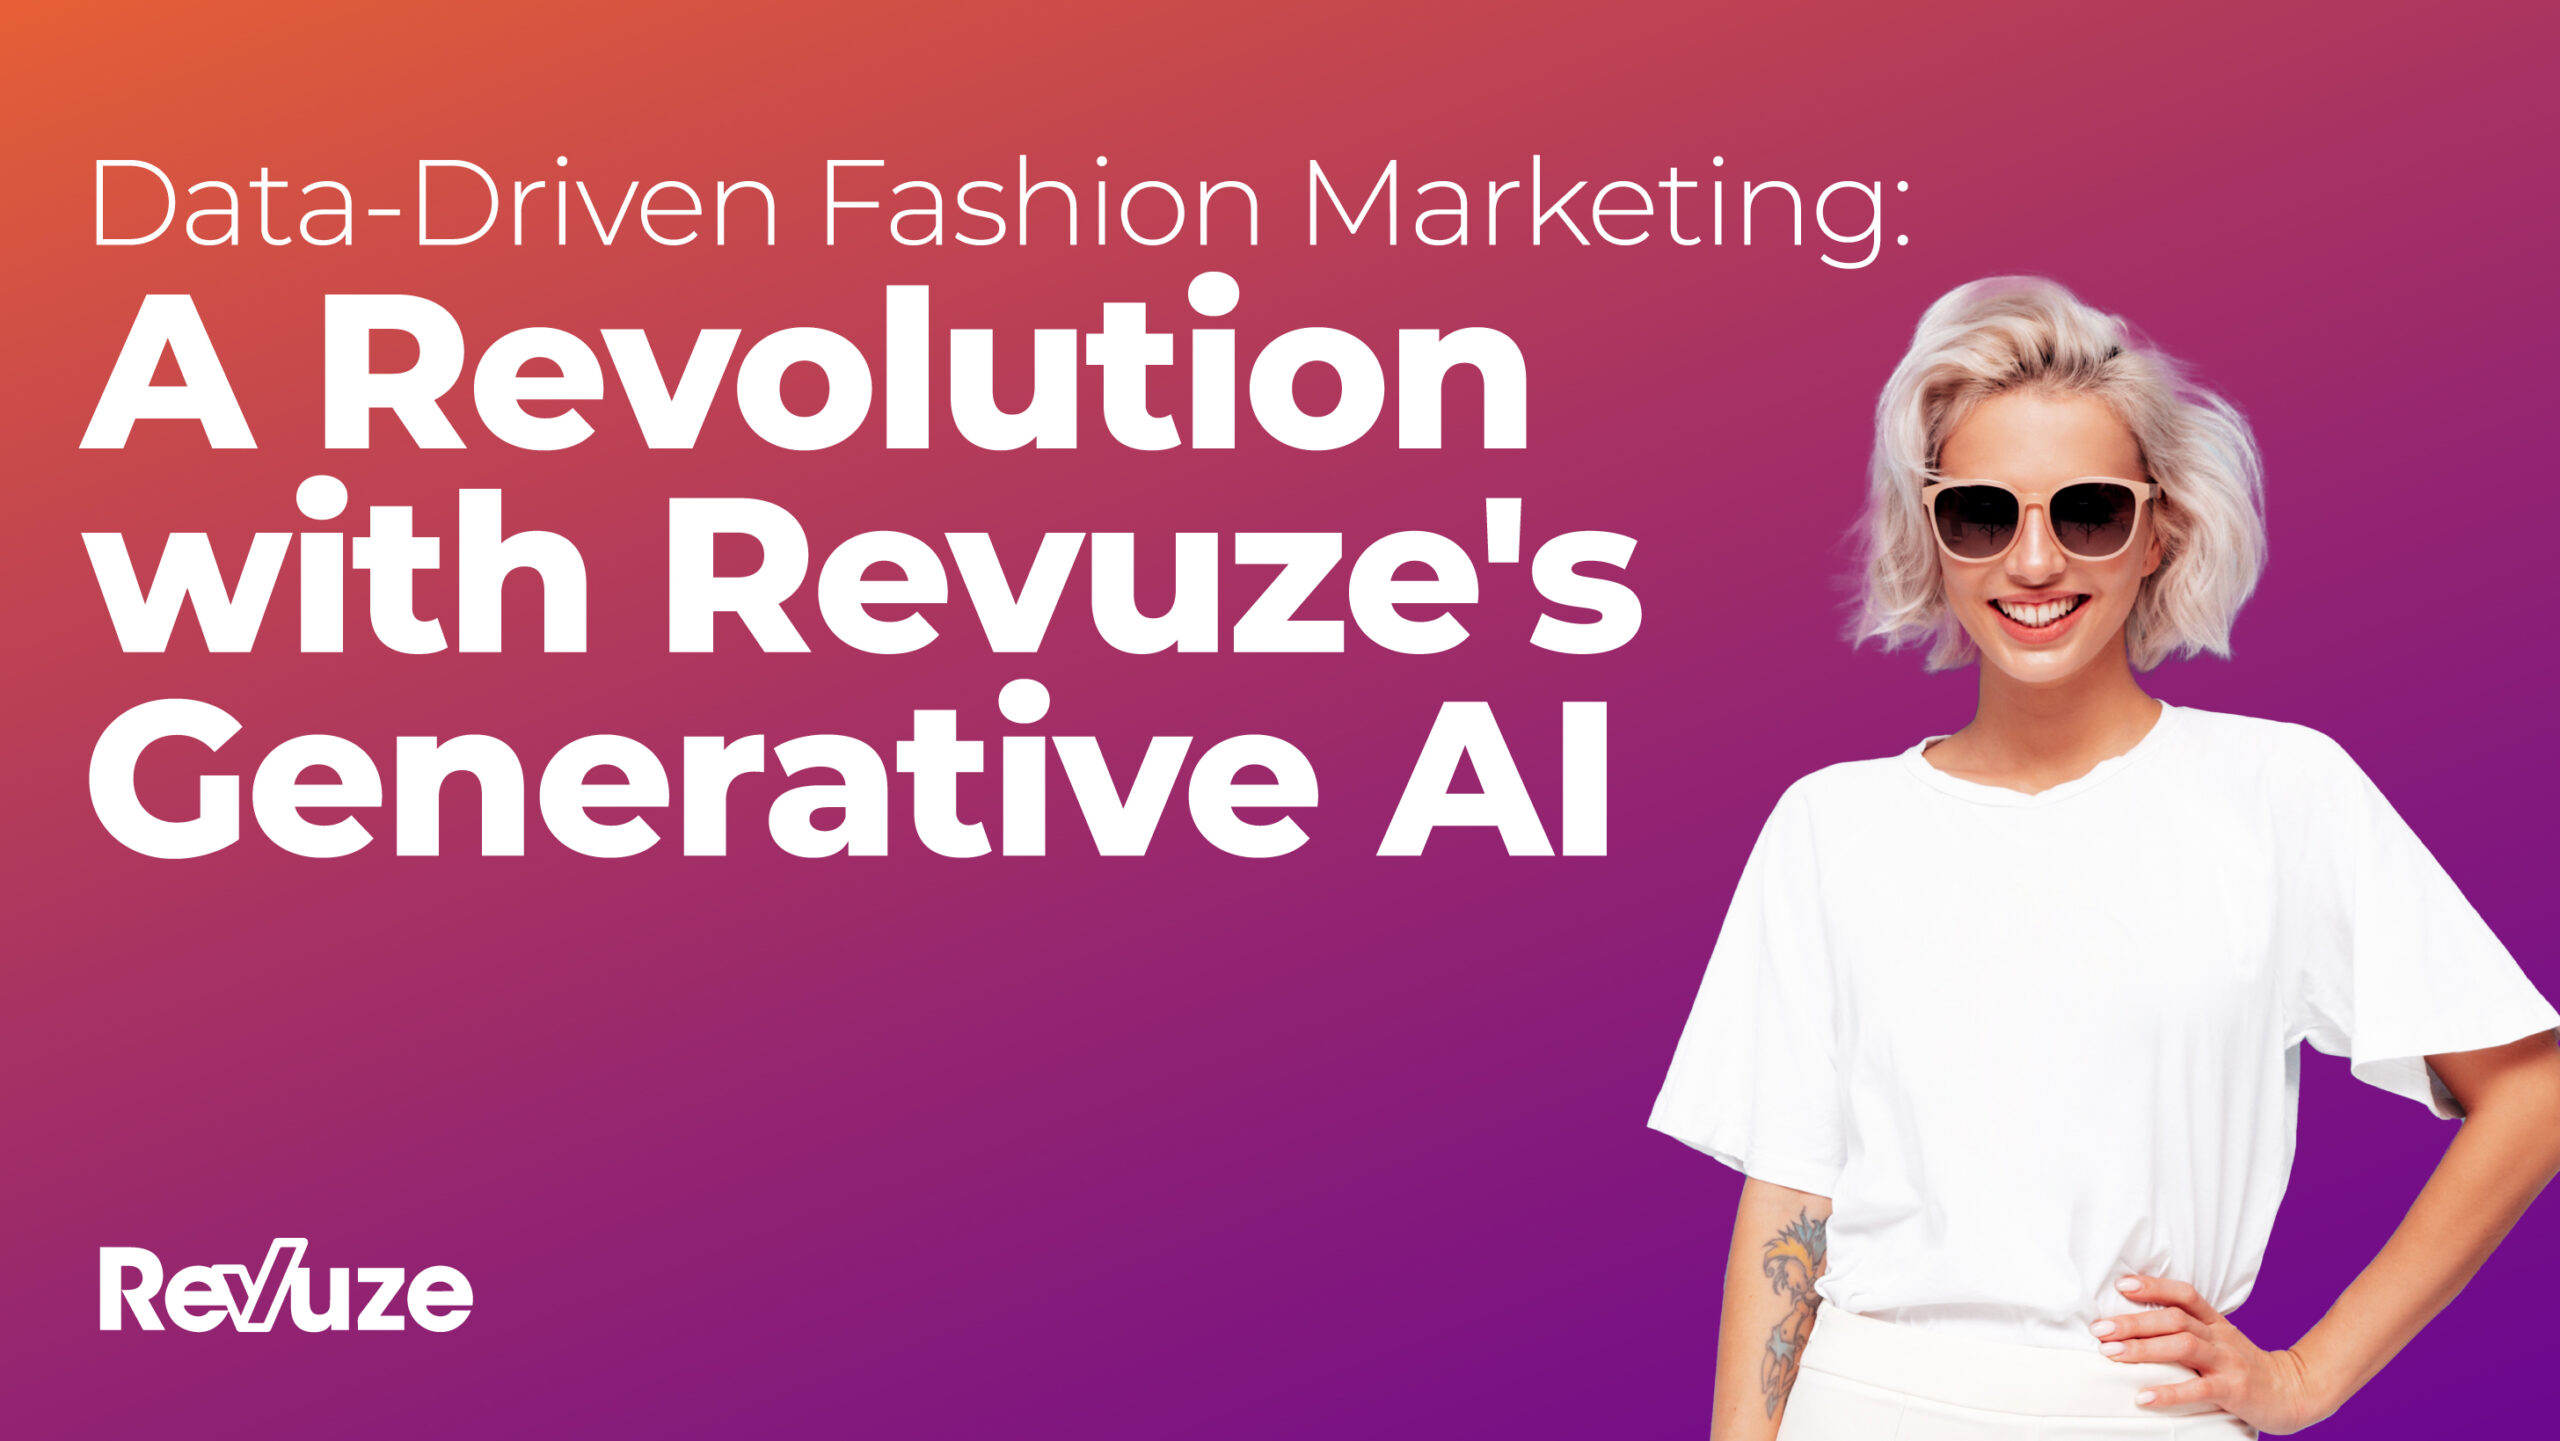 Data-Driven Fashion Marketing: A Revolution with Revuze’s Generative AI